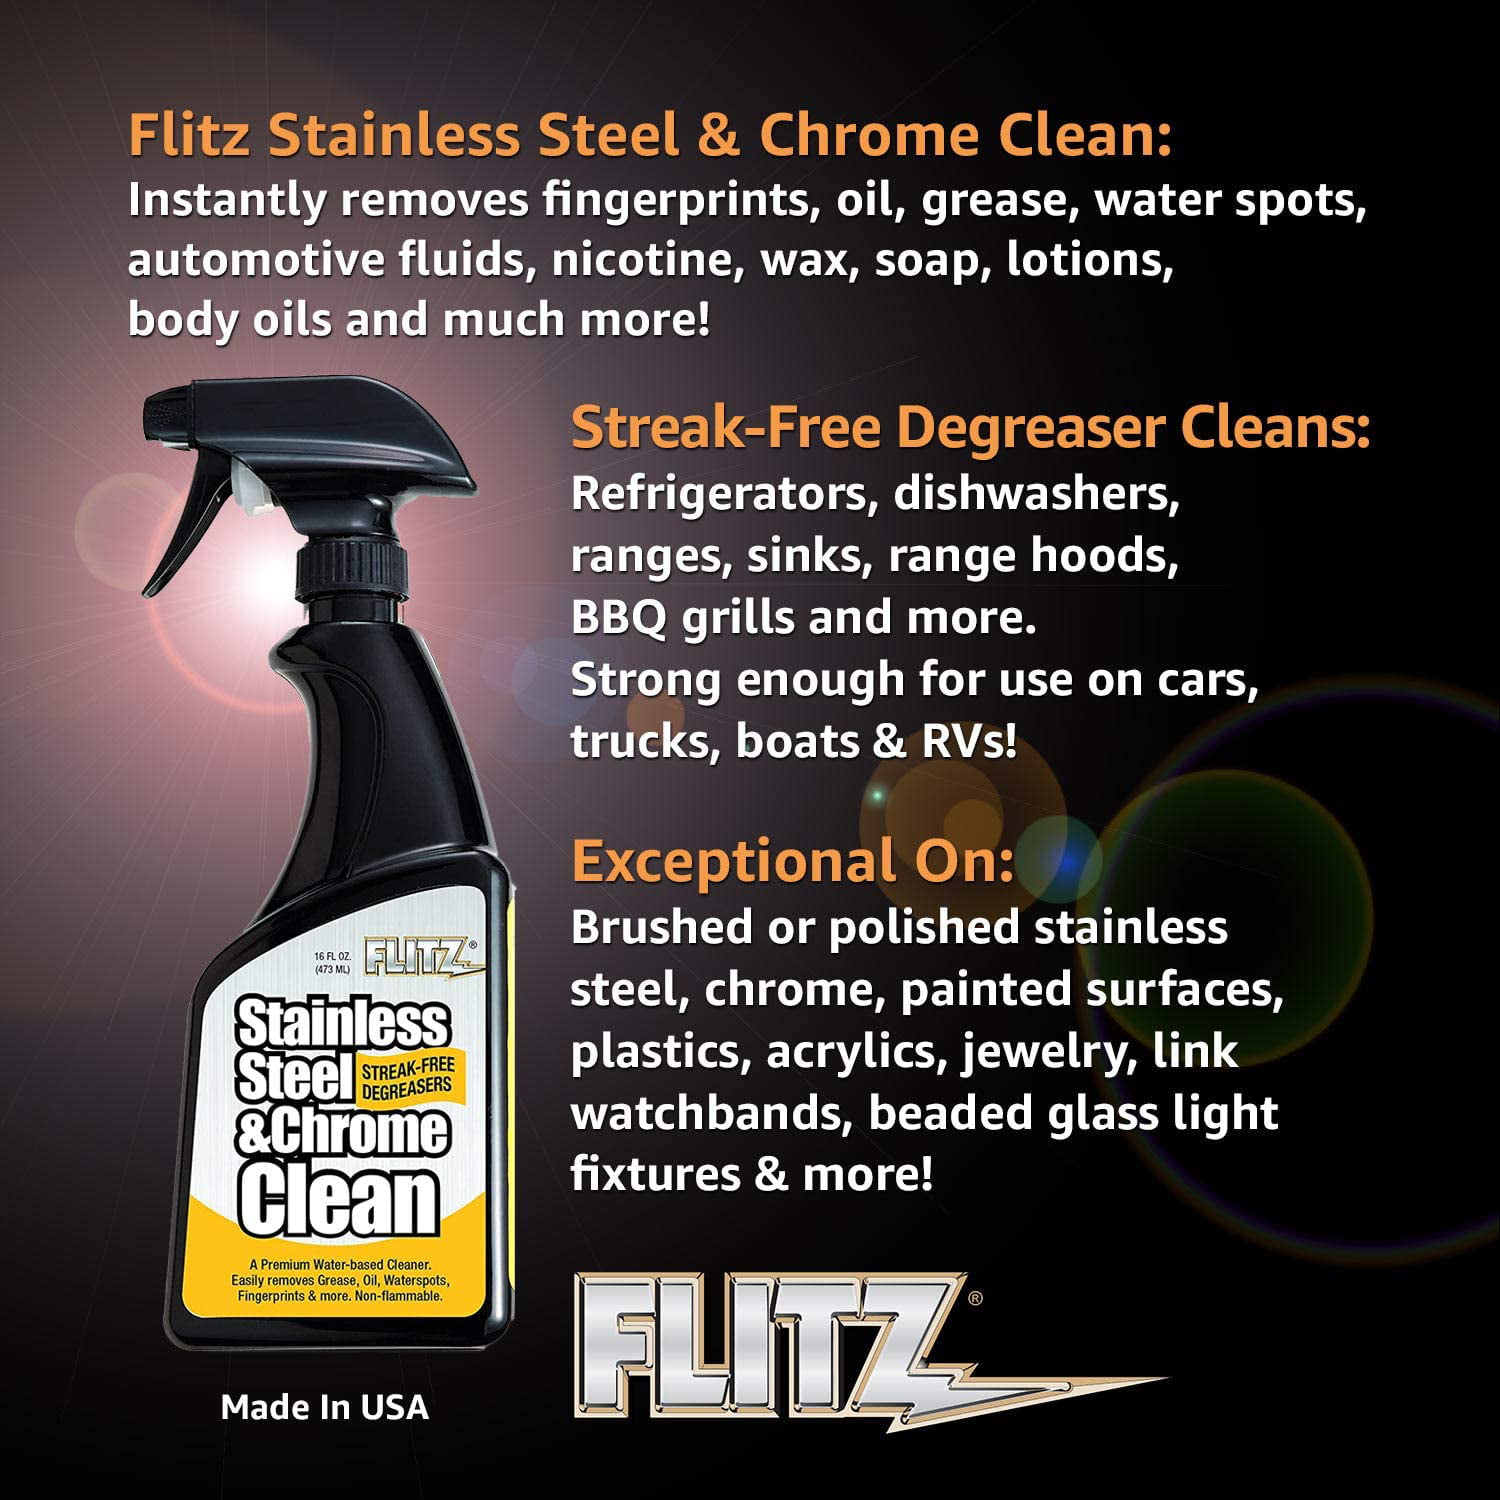 Flitz Stainless Steel & Chrome Cleaner Degreaser